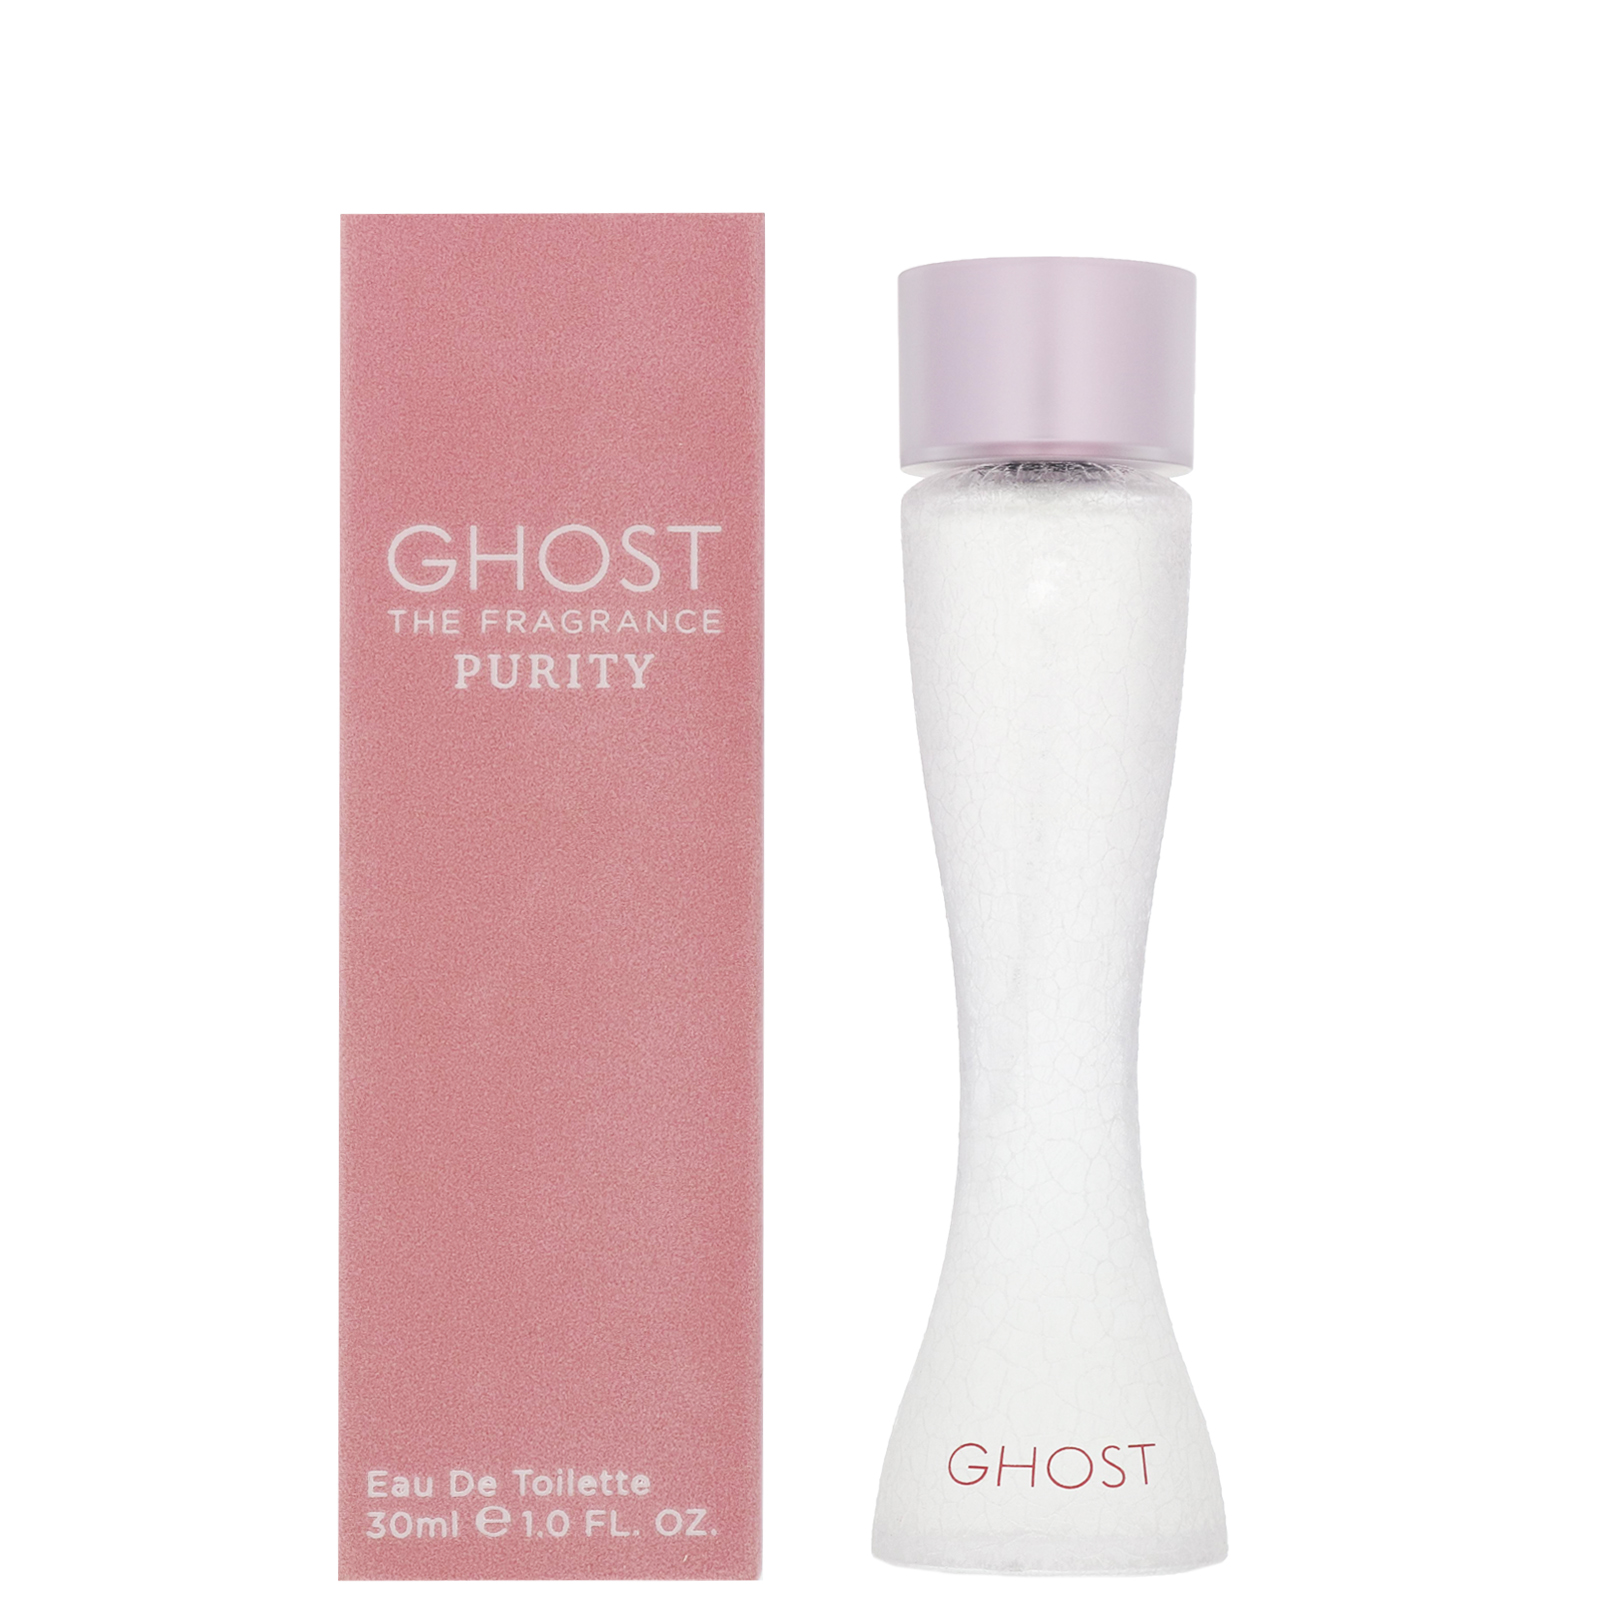 Ghost Purity Eau de Toilette 100ml Spray